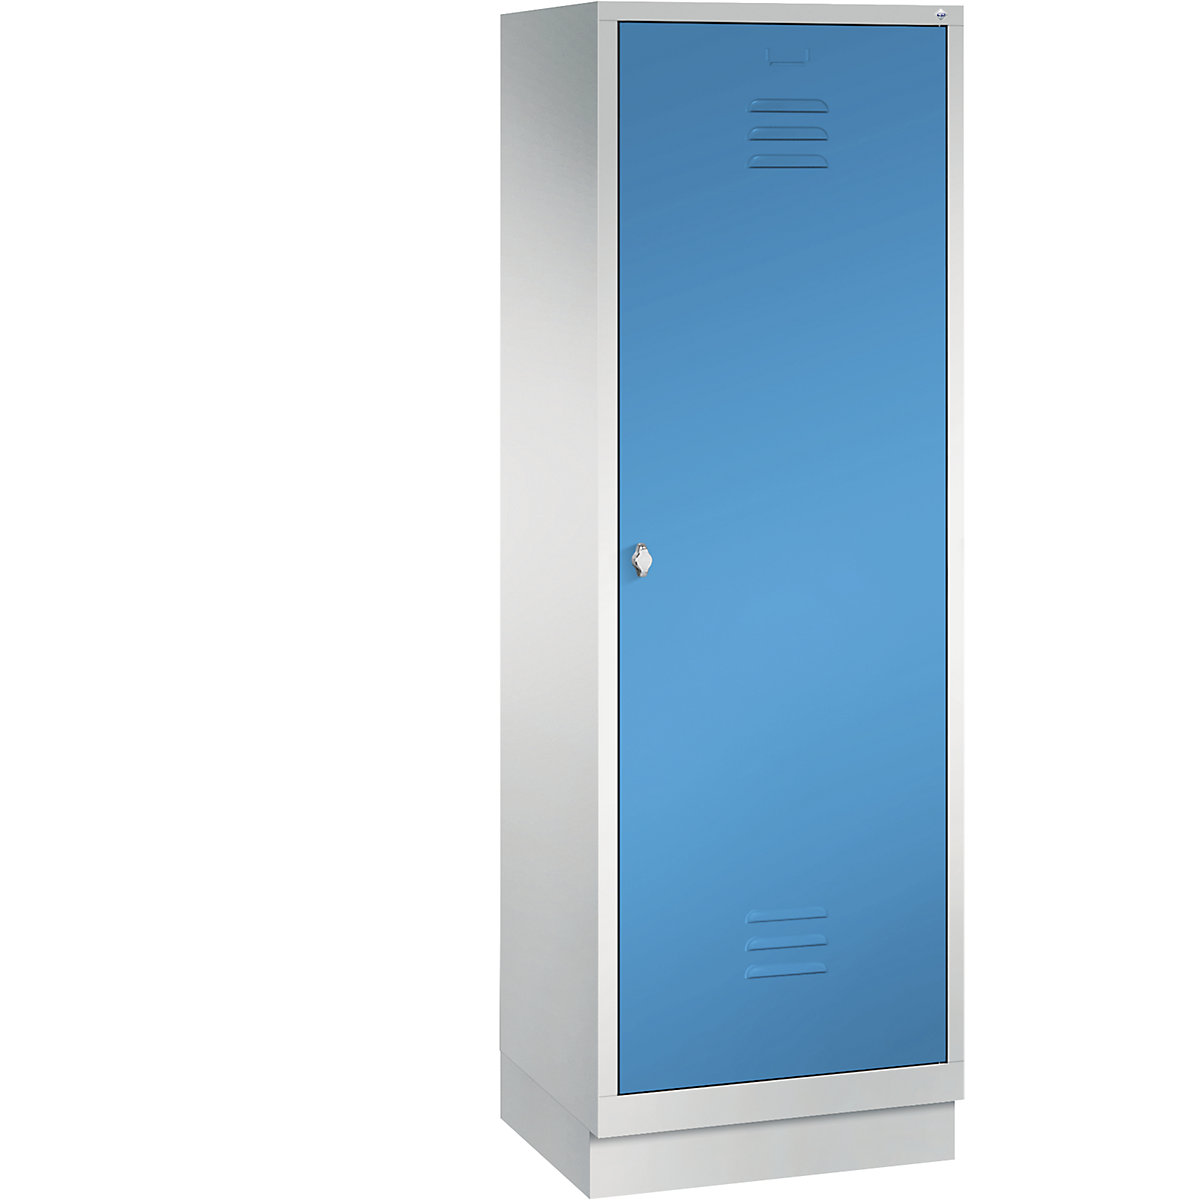 CLASSIC Garderobenschrank mit Sockel, Tür über 2 Abteile C+P, 2 Abteile, Abteilbreite 300 mm, lichtgrau / lichtblau-9